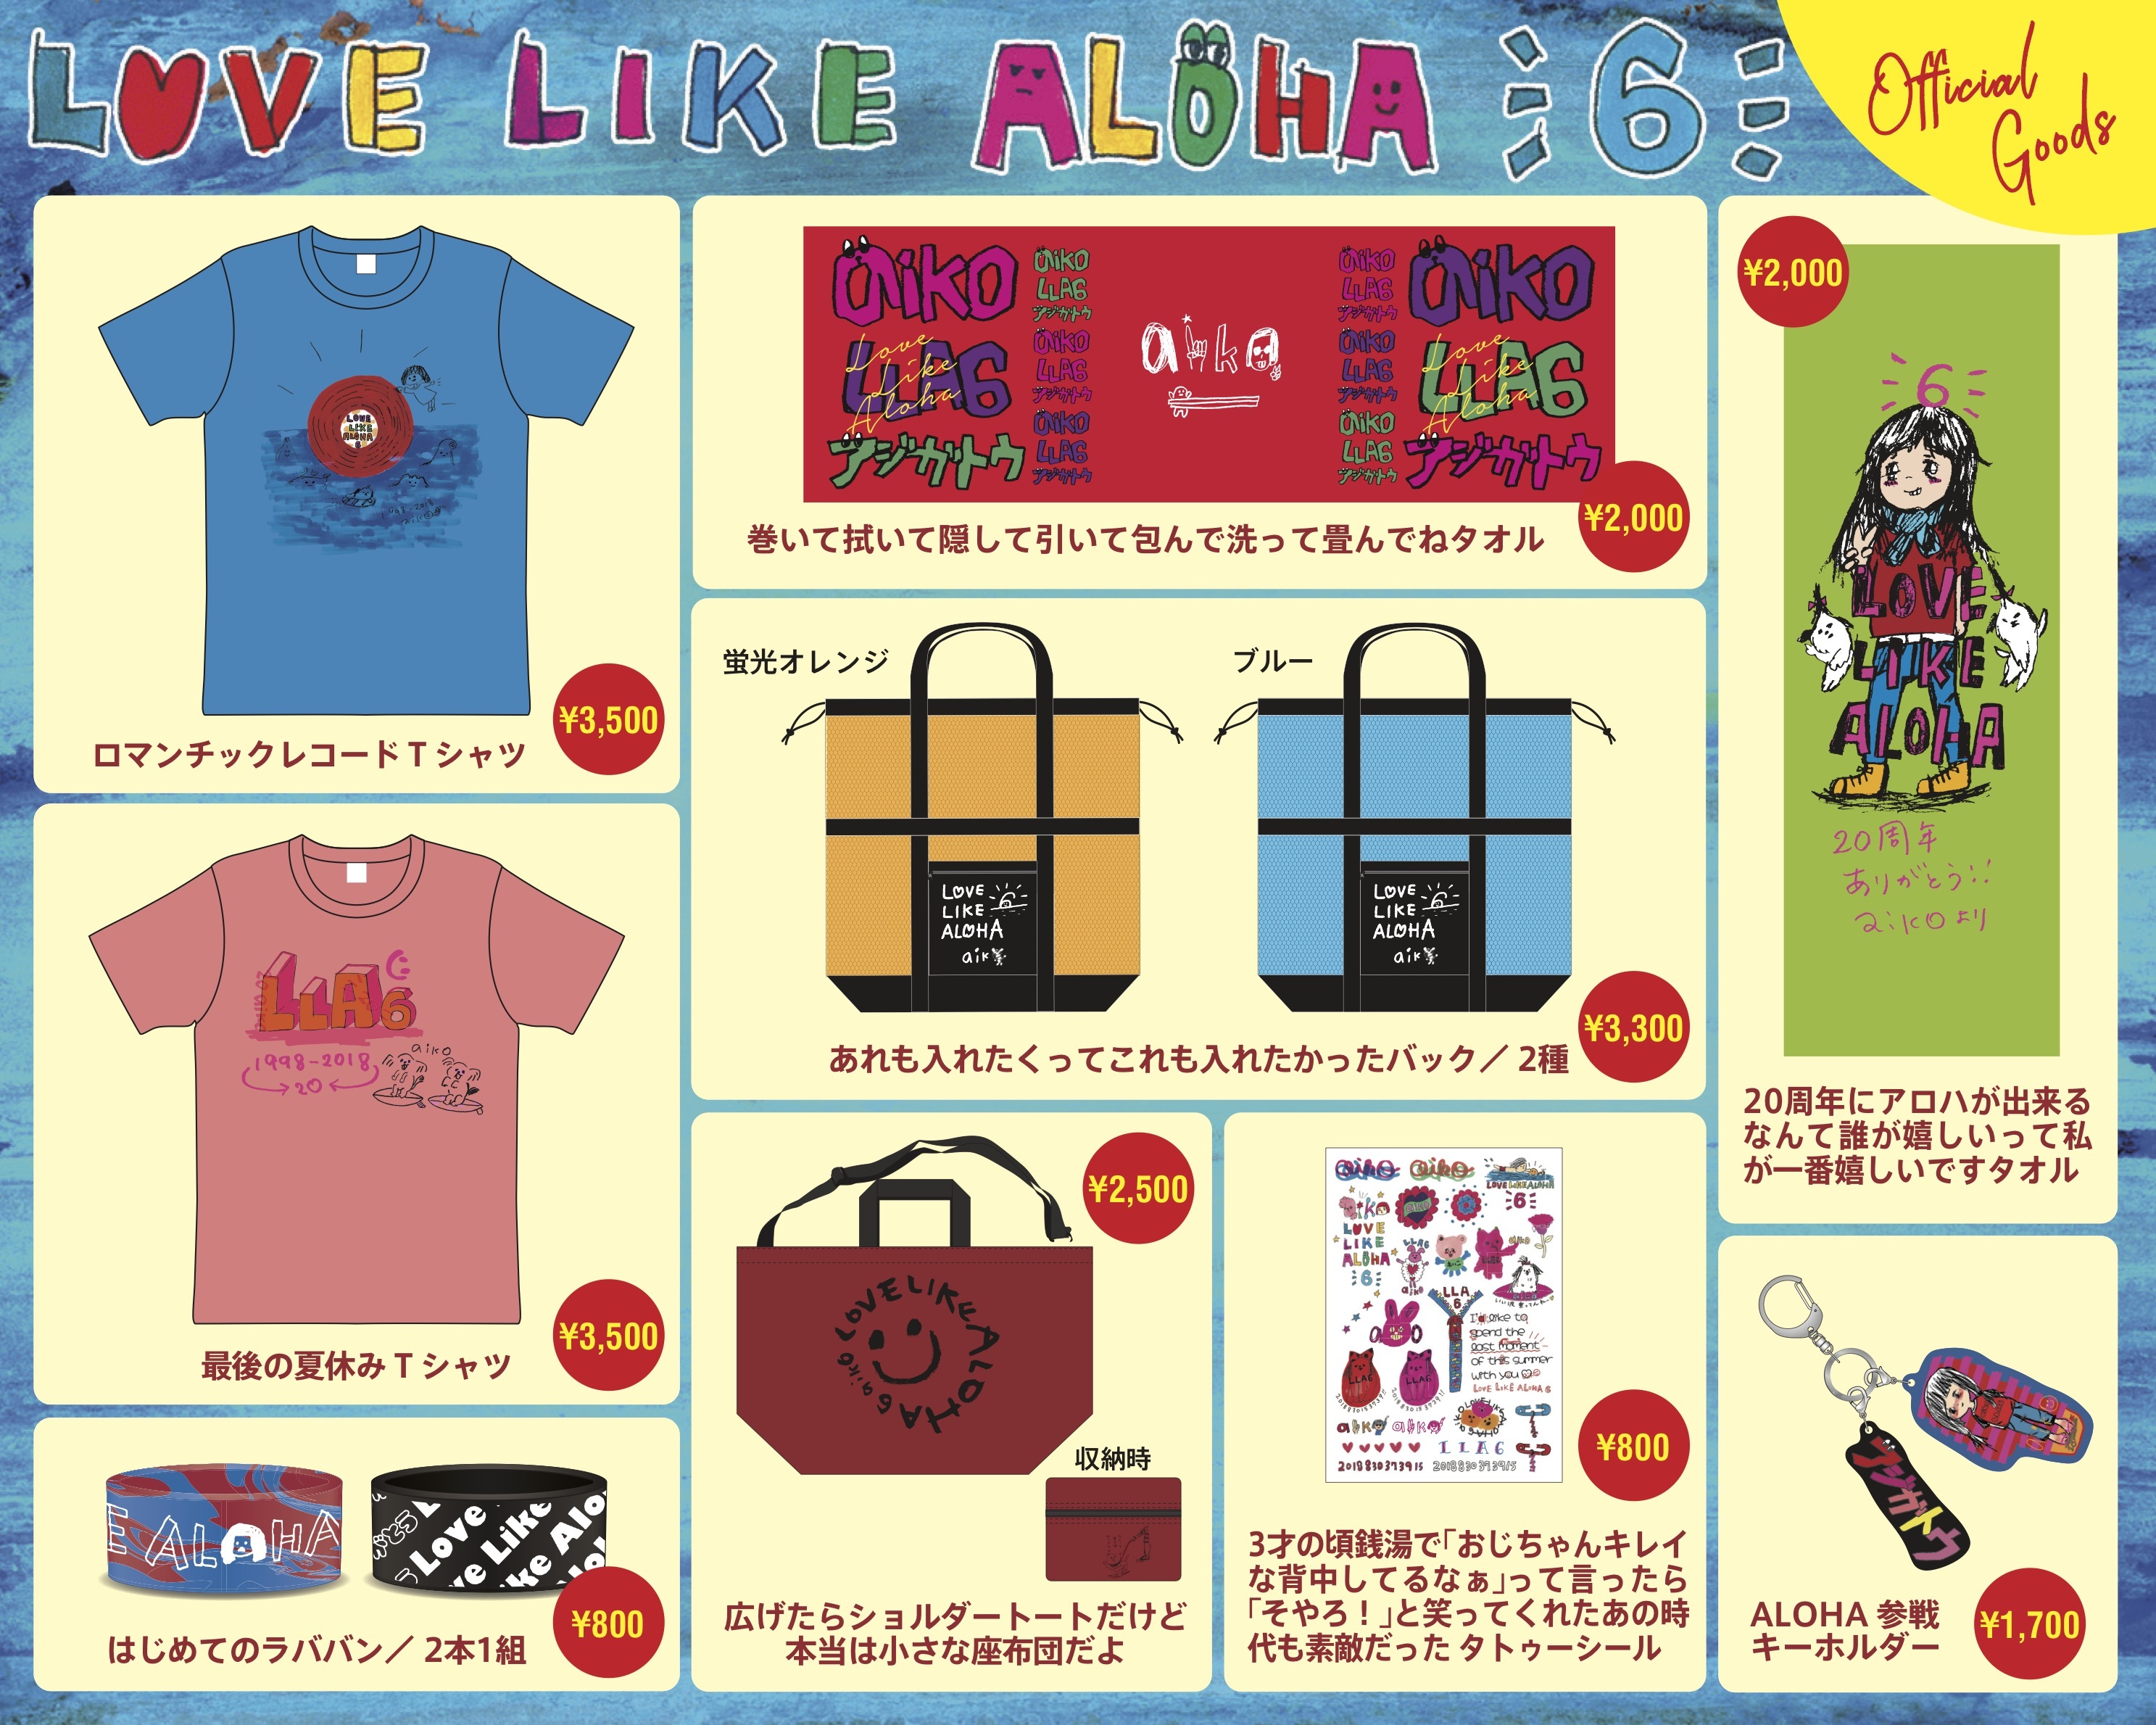 aiko『Love Like Aloha vol.6』のグッズ通信販売開始